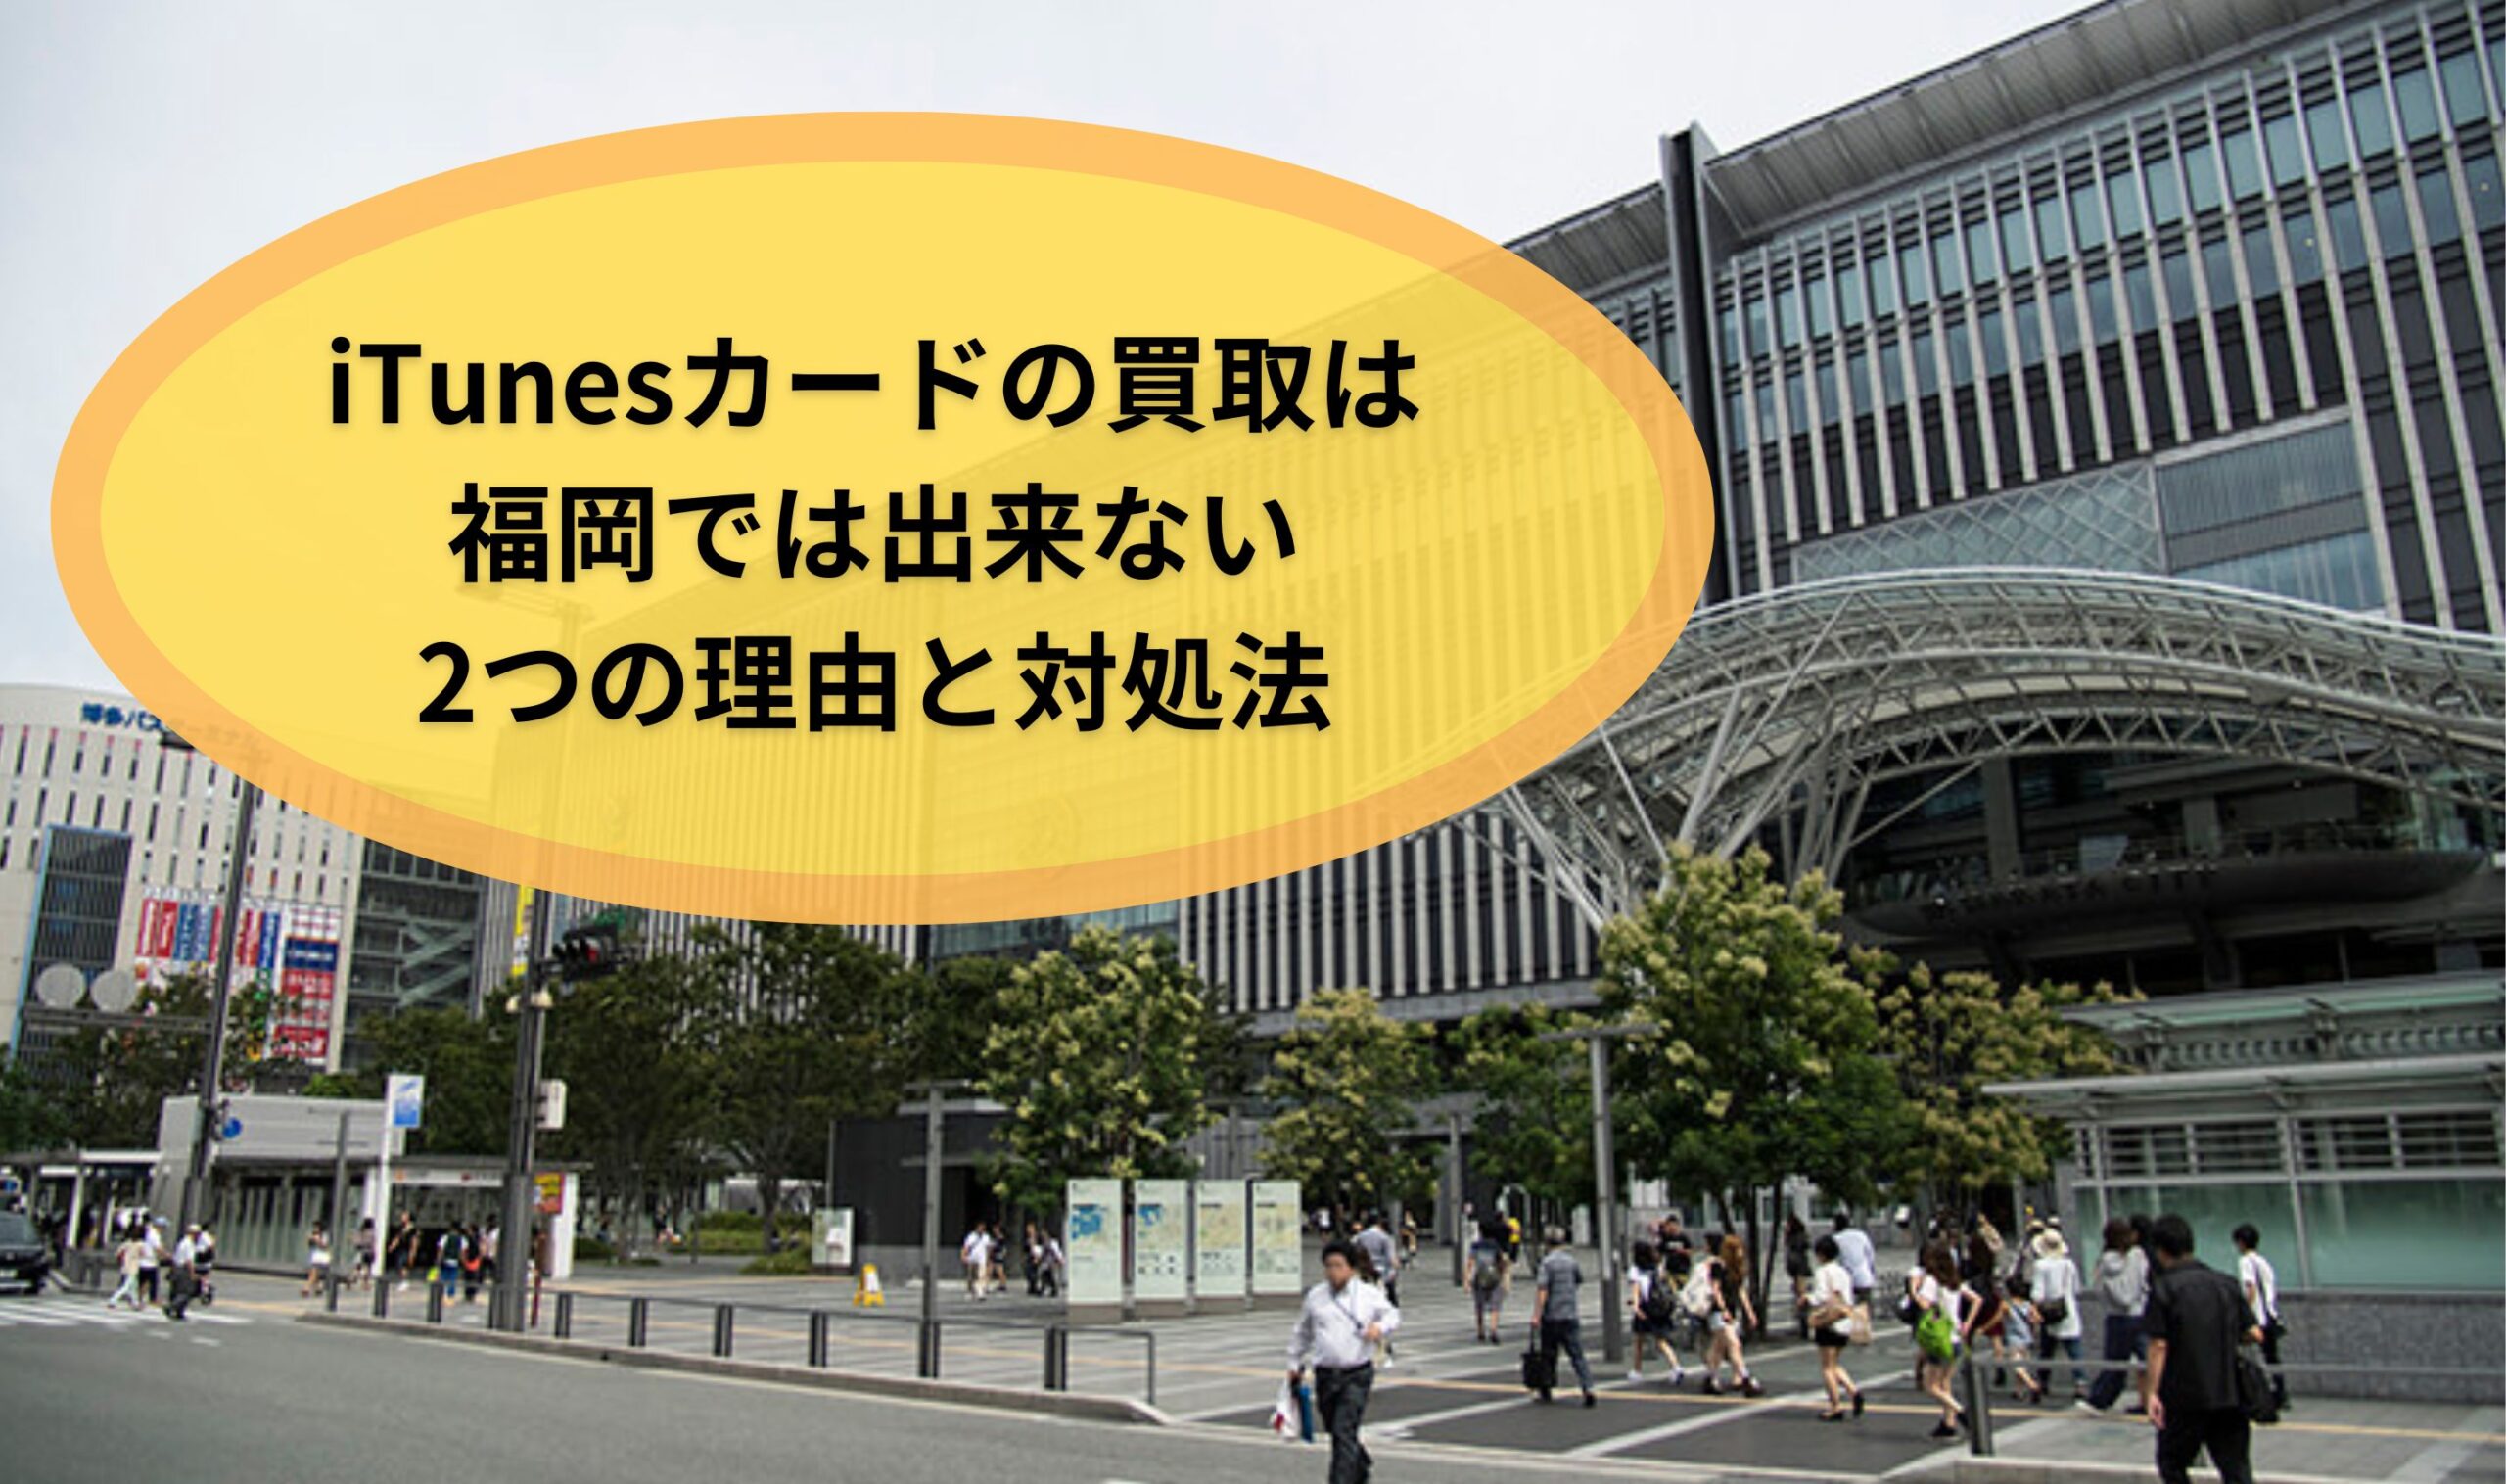 iTunesカードの買取は福岡では出来ない2つの理由と対処法